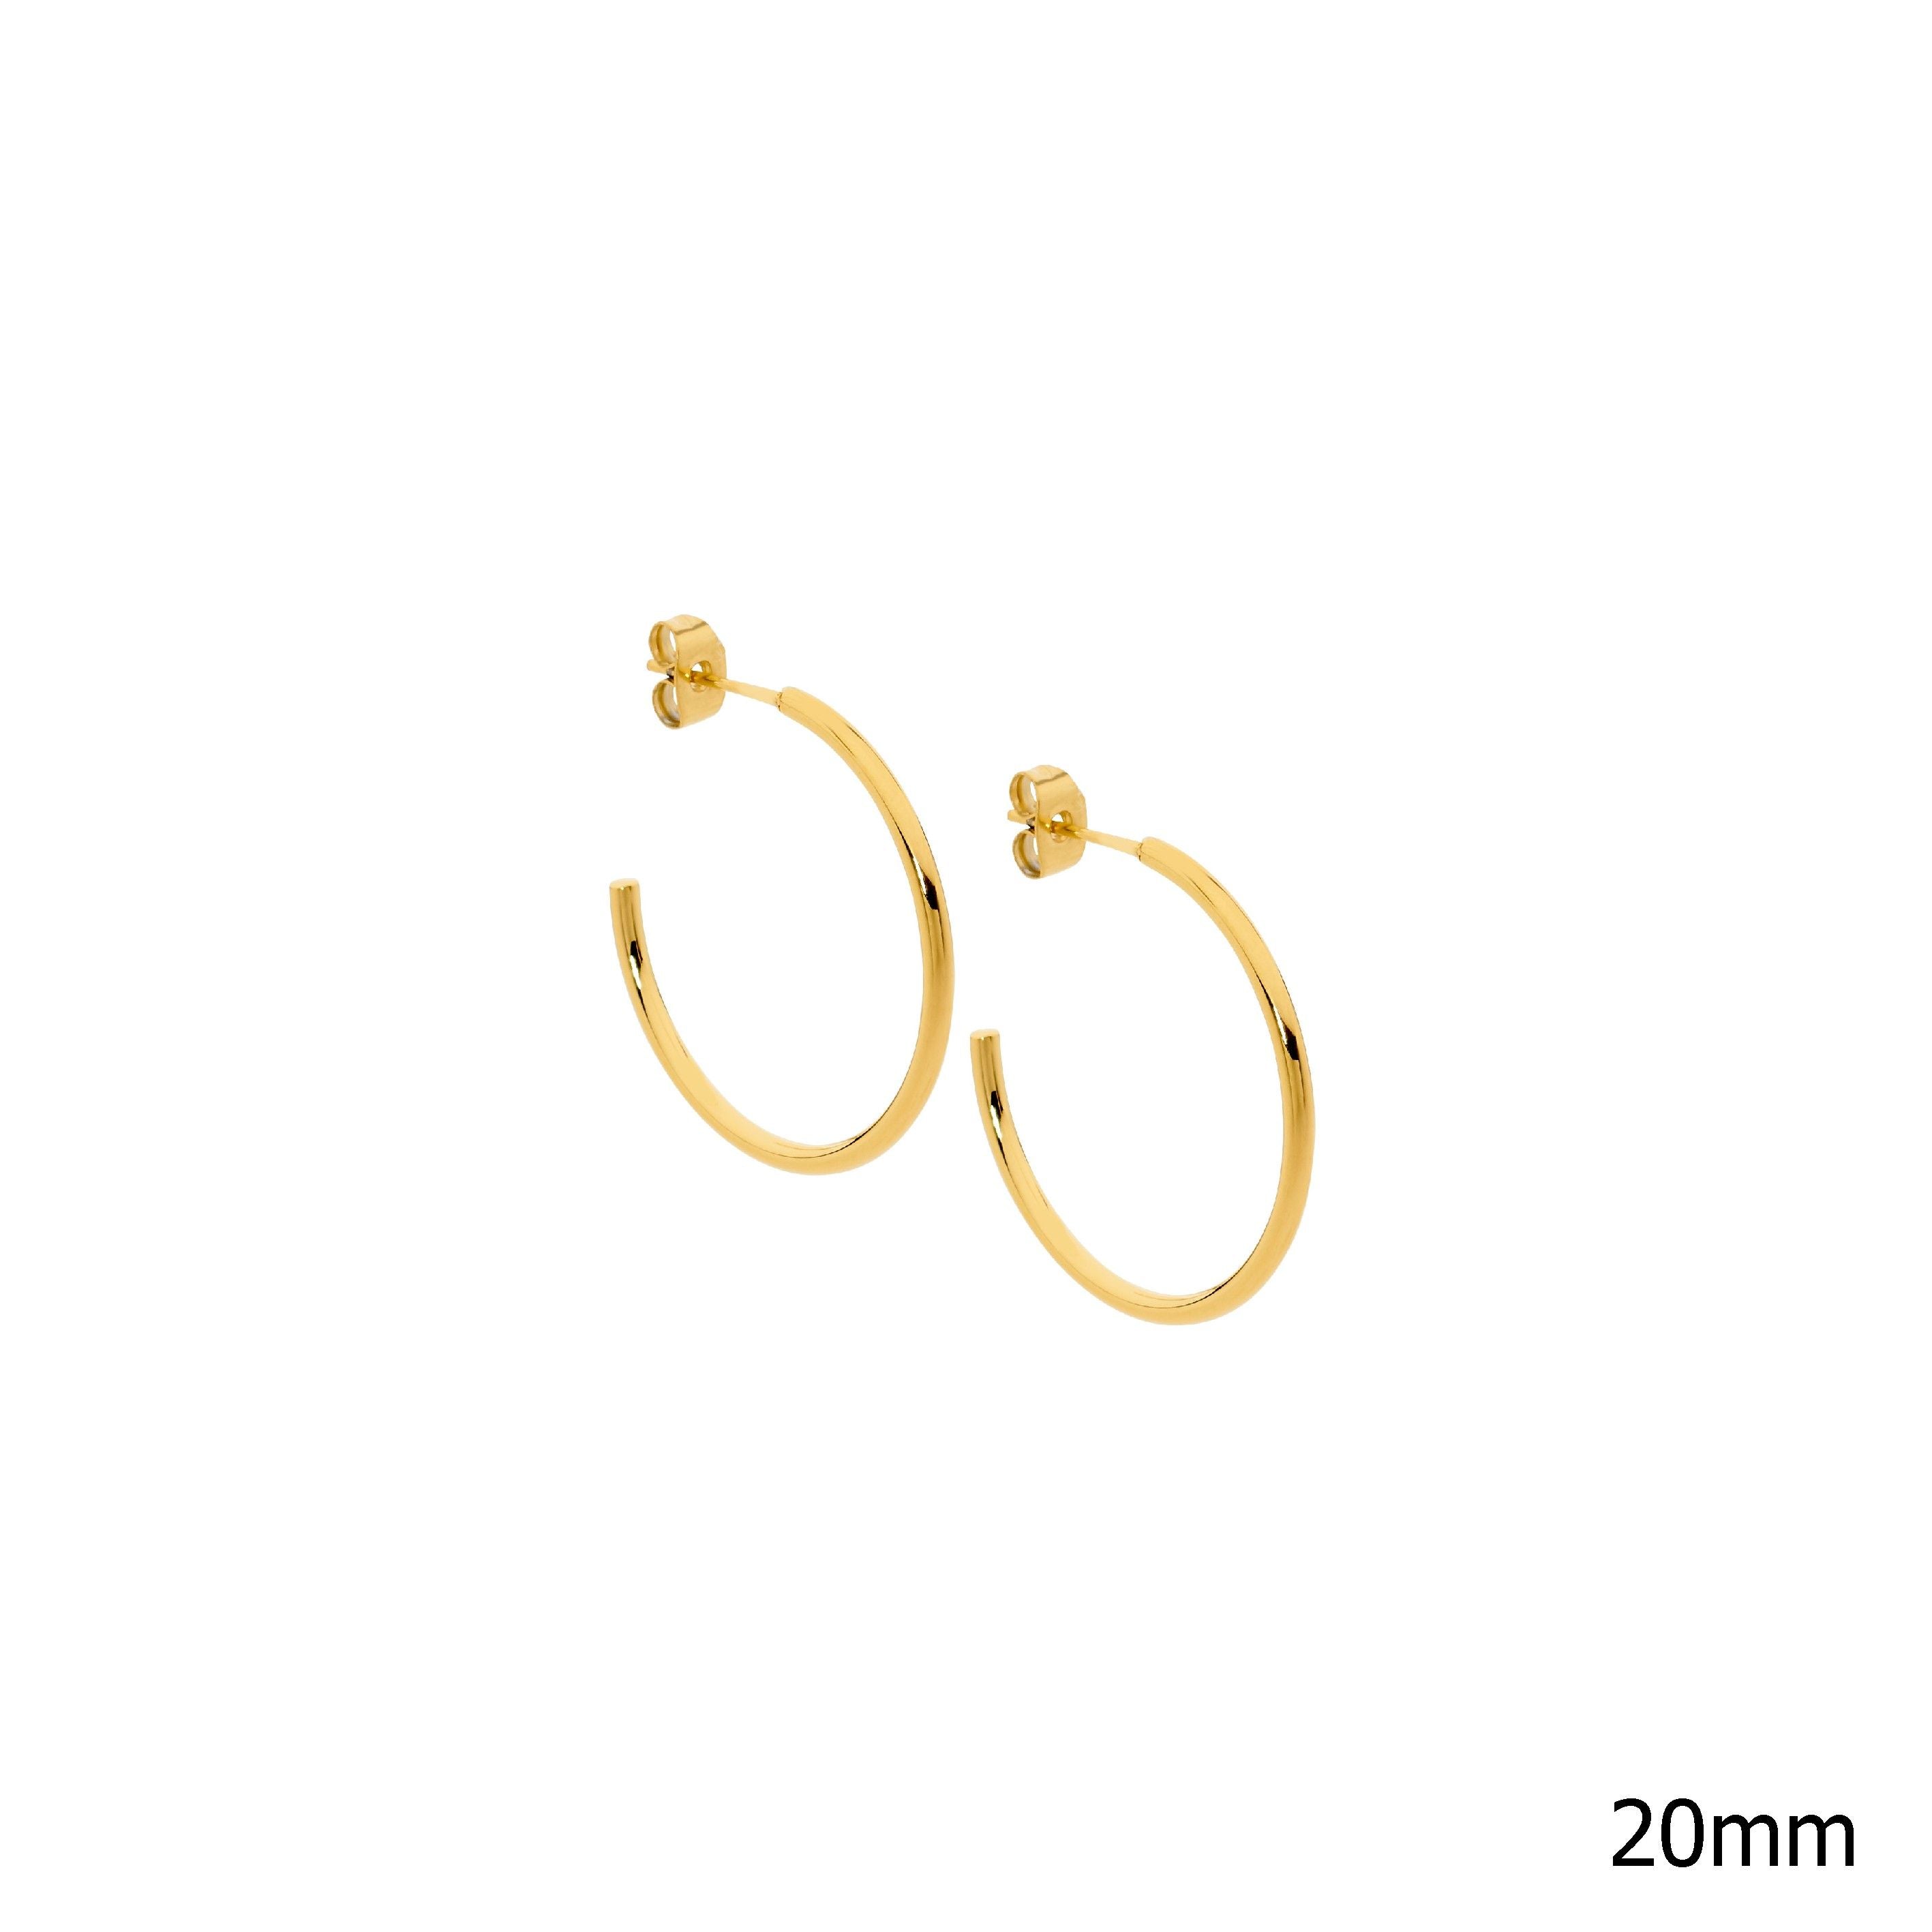 ELLANI Stainless Steel Hoop Earrings Gold Plating